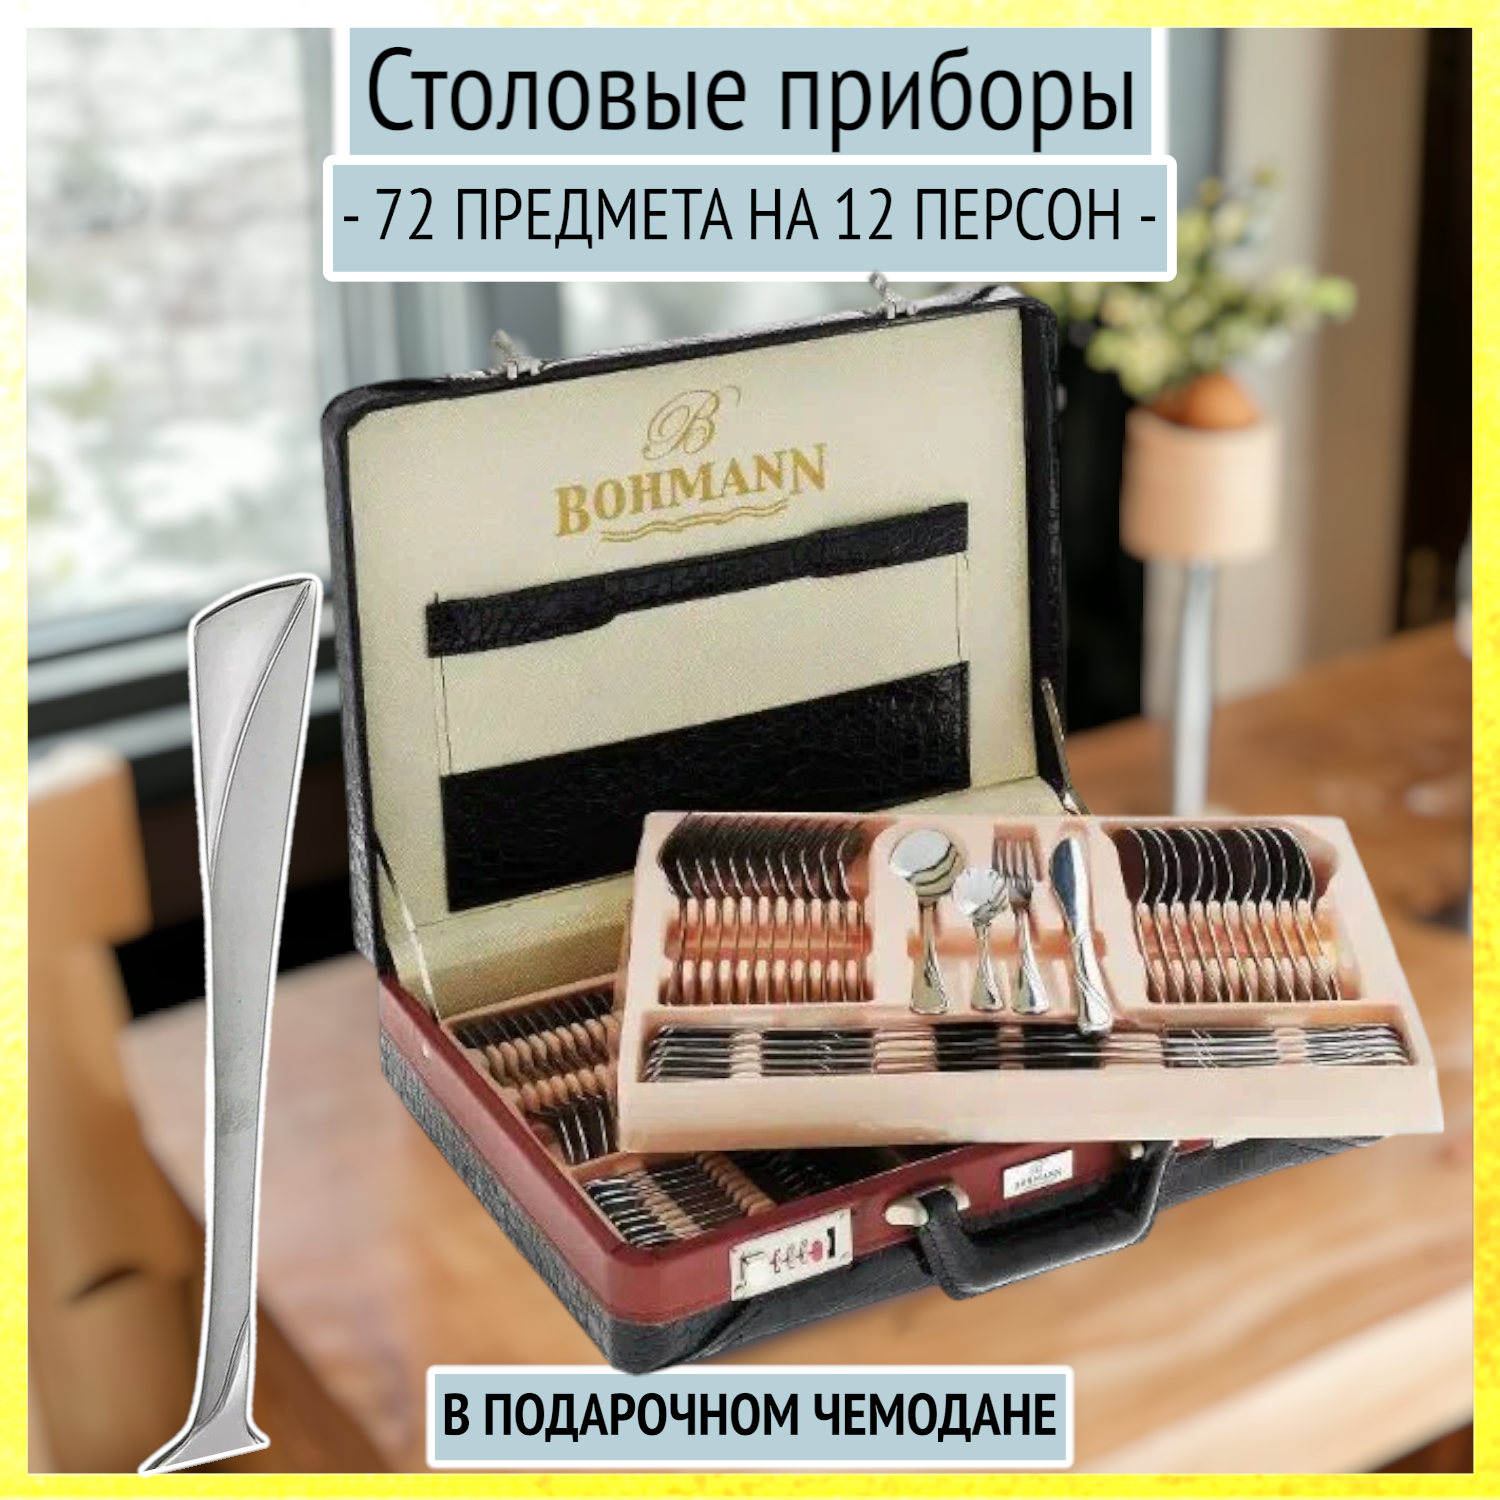 Столовые приборы 72 предмета в матовом чемодане на 12 персон, Bohmann, BН-5946